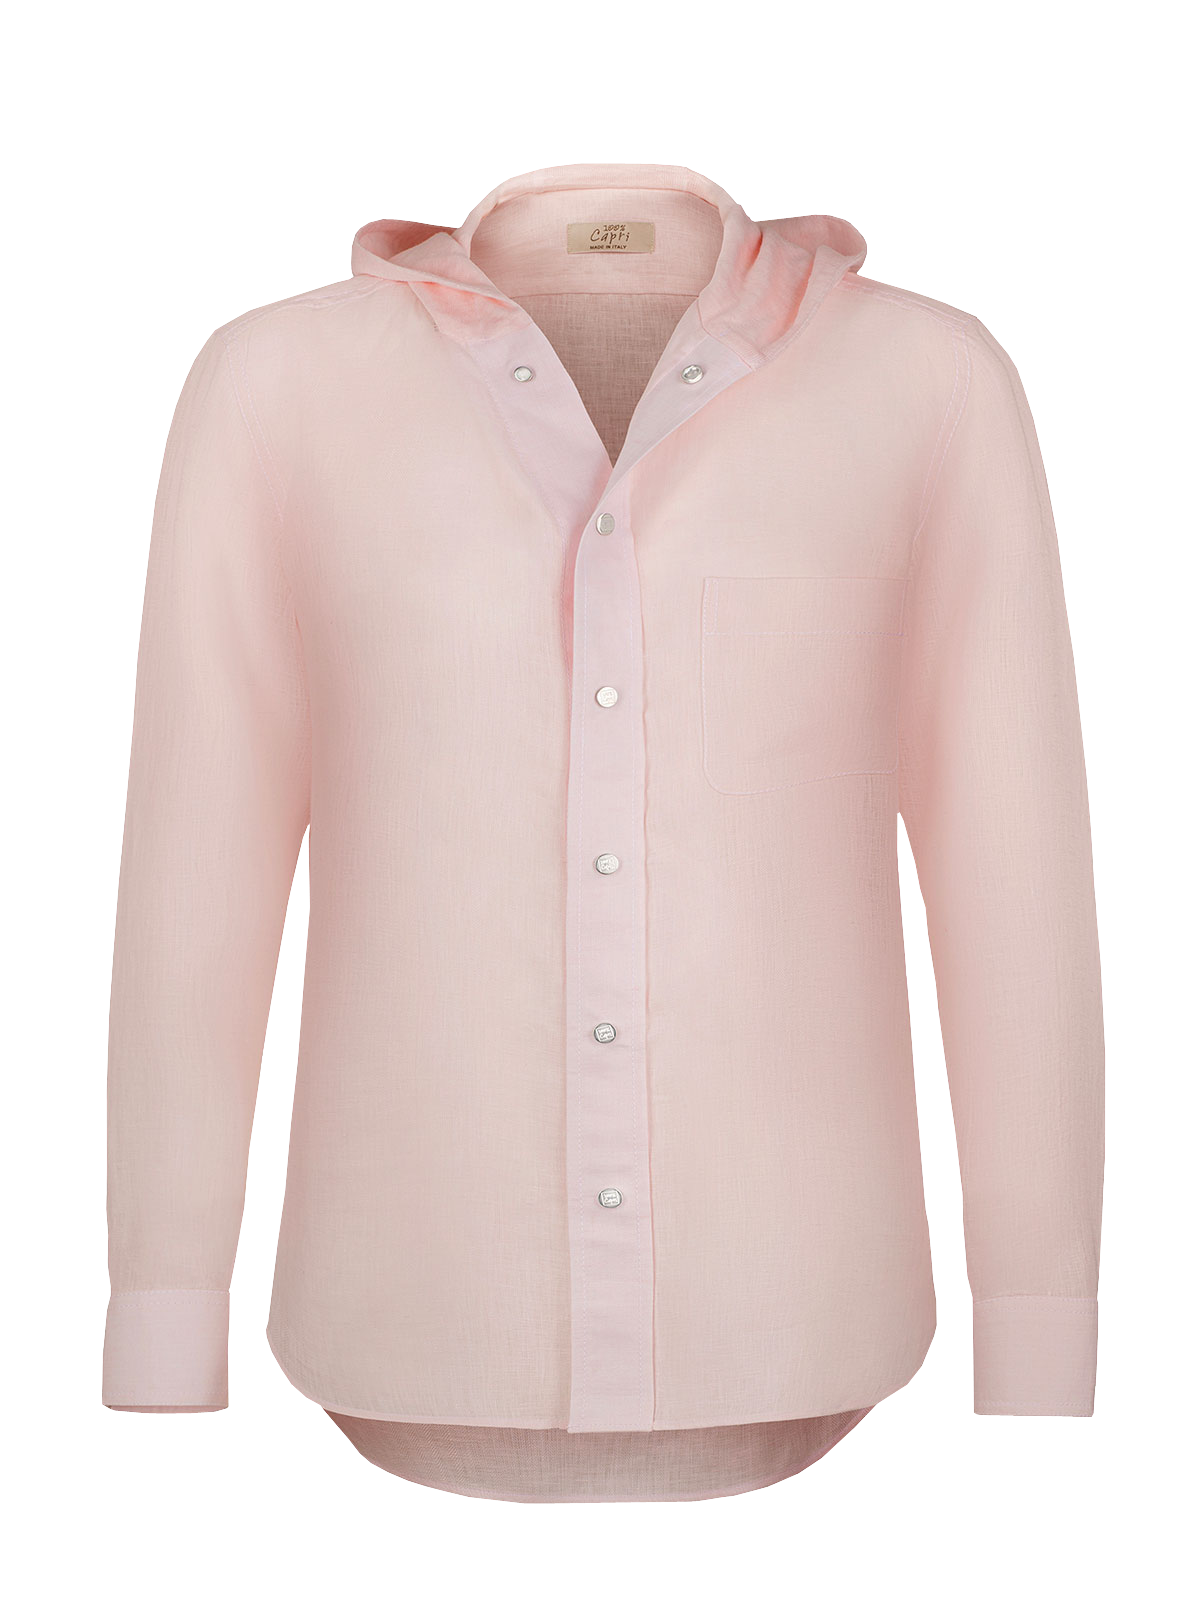 Camicia Cappuccio 100% Capri pink linen t-shirt front